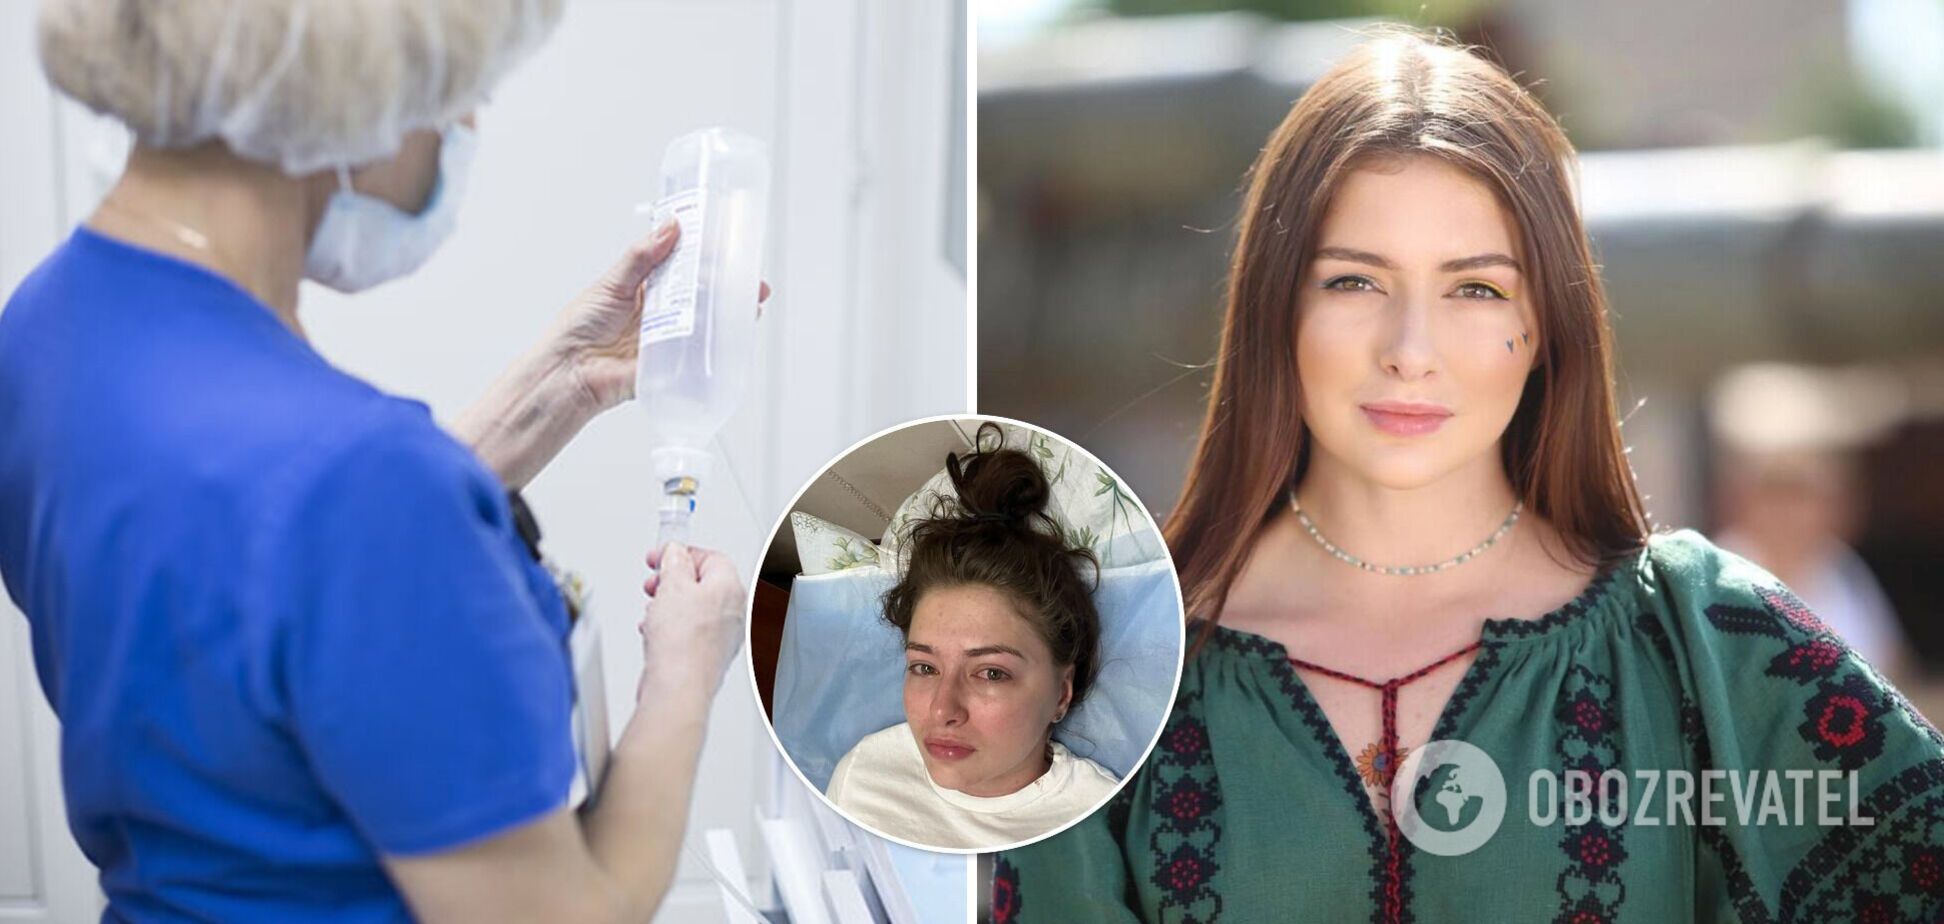 Тяжелобольная украинская актриса Екатерина Тышкевич начала экспериментальное лечение